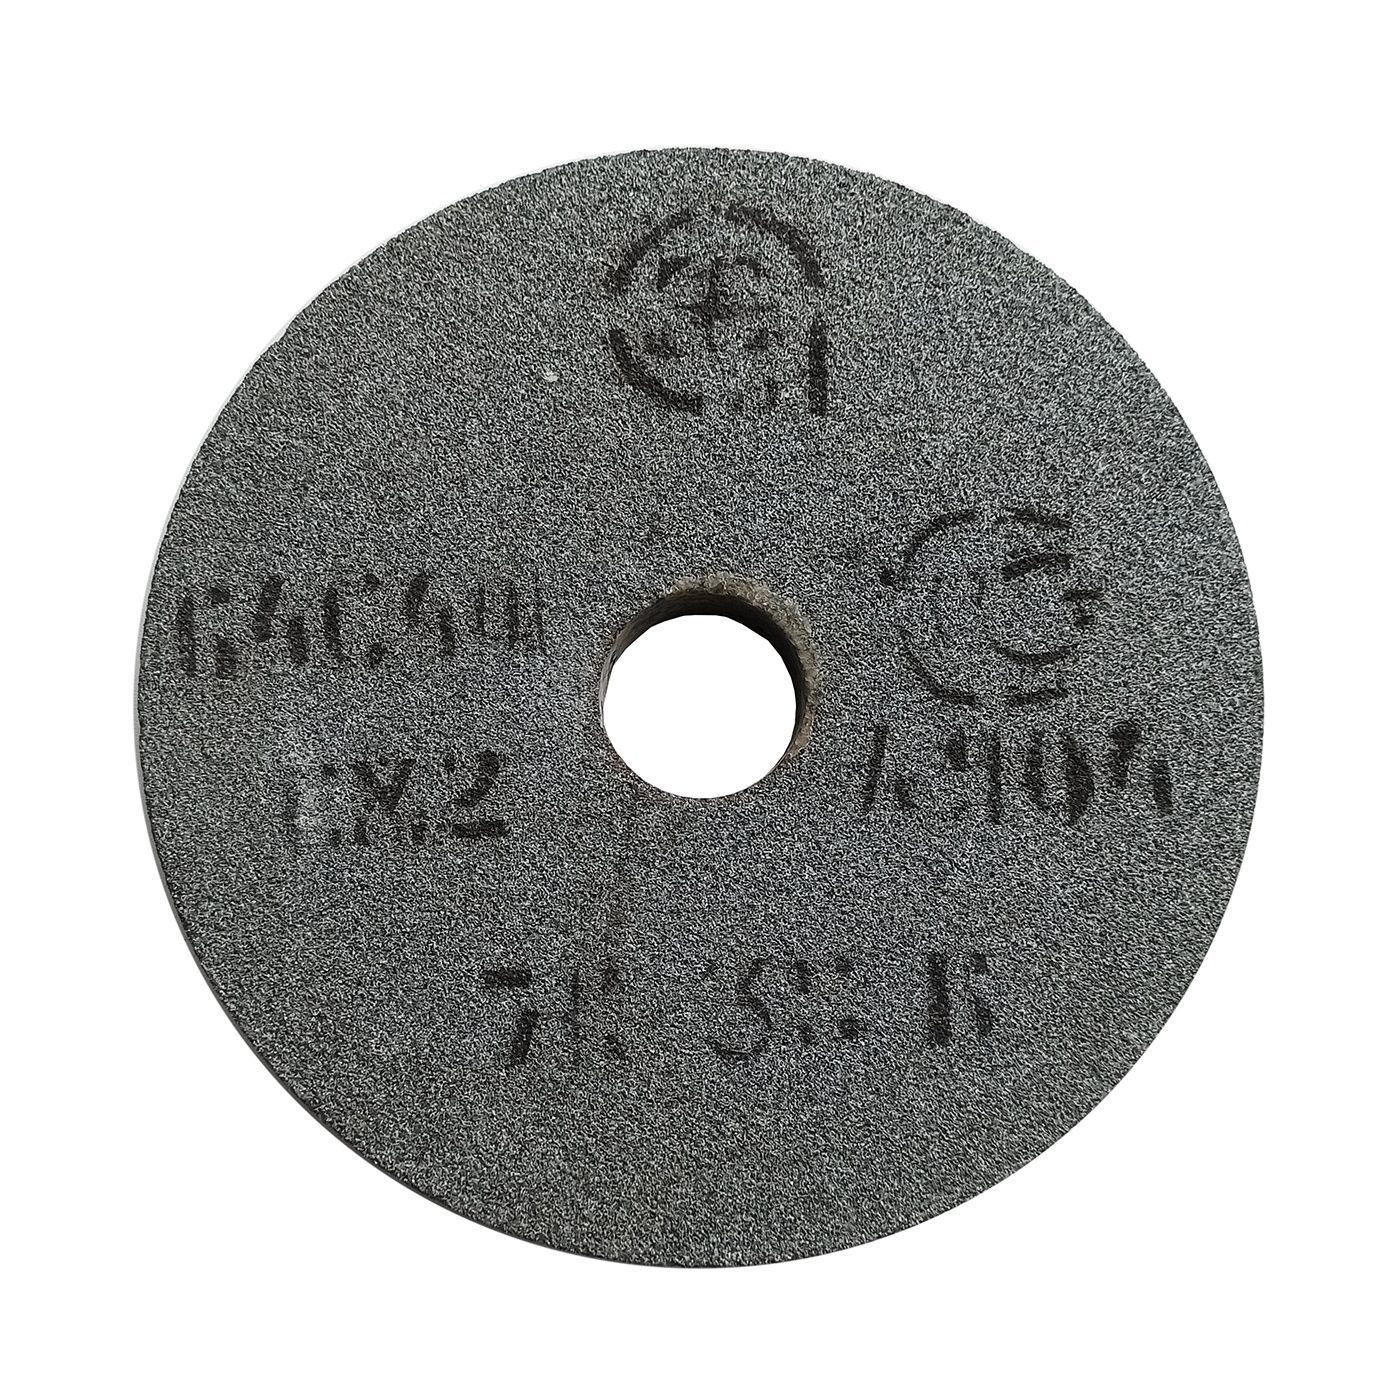 Диск 175. Круг шлифовальный 175x10x32 (64c f60 k-l 5-7 v 35 м/с). Круг шлифовальный 300 40 127 25а 40 l6 v 50 3200об/мин. Т 175 диск. Наждачный круг для точила Размеры характеристики виды ГОСТЫ.